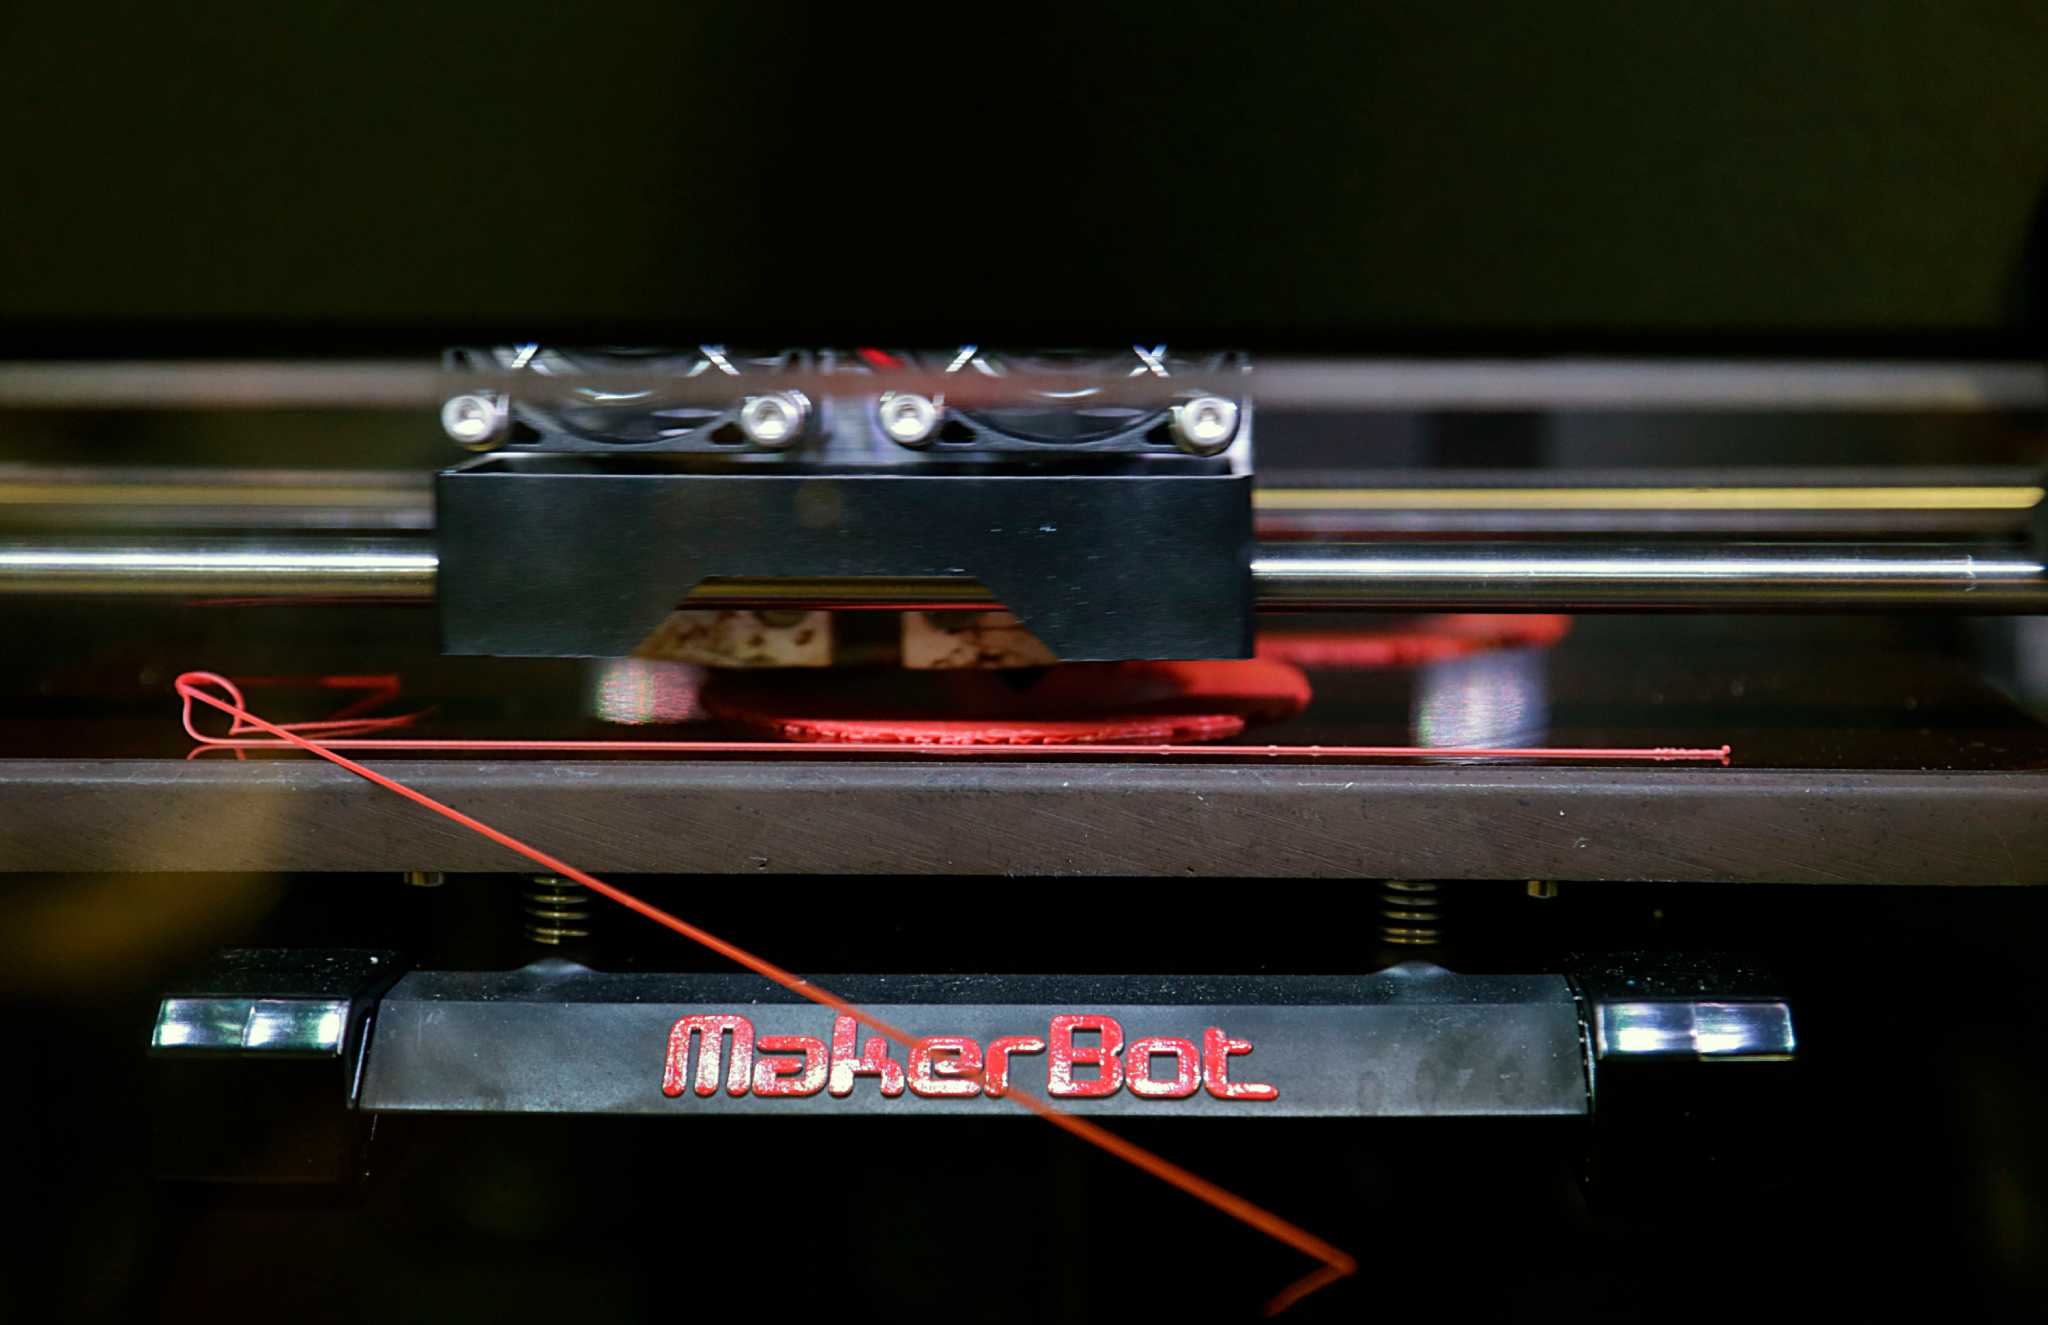 School makes big move into 3-D printing